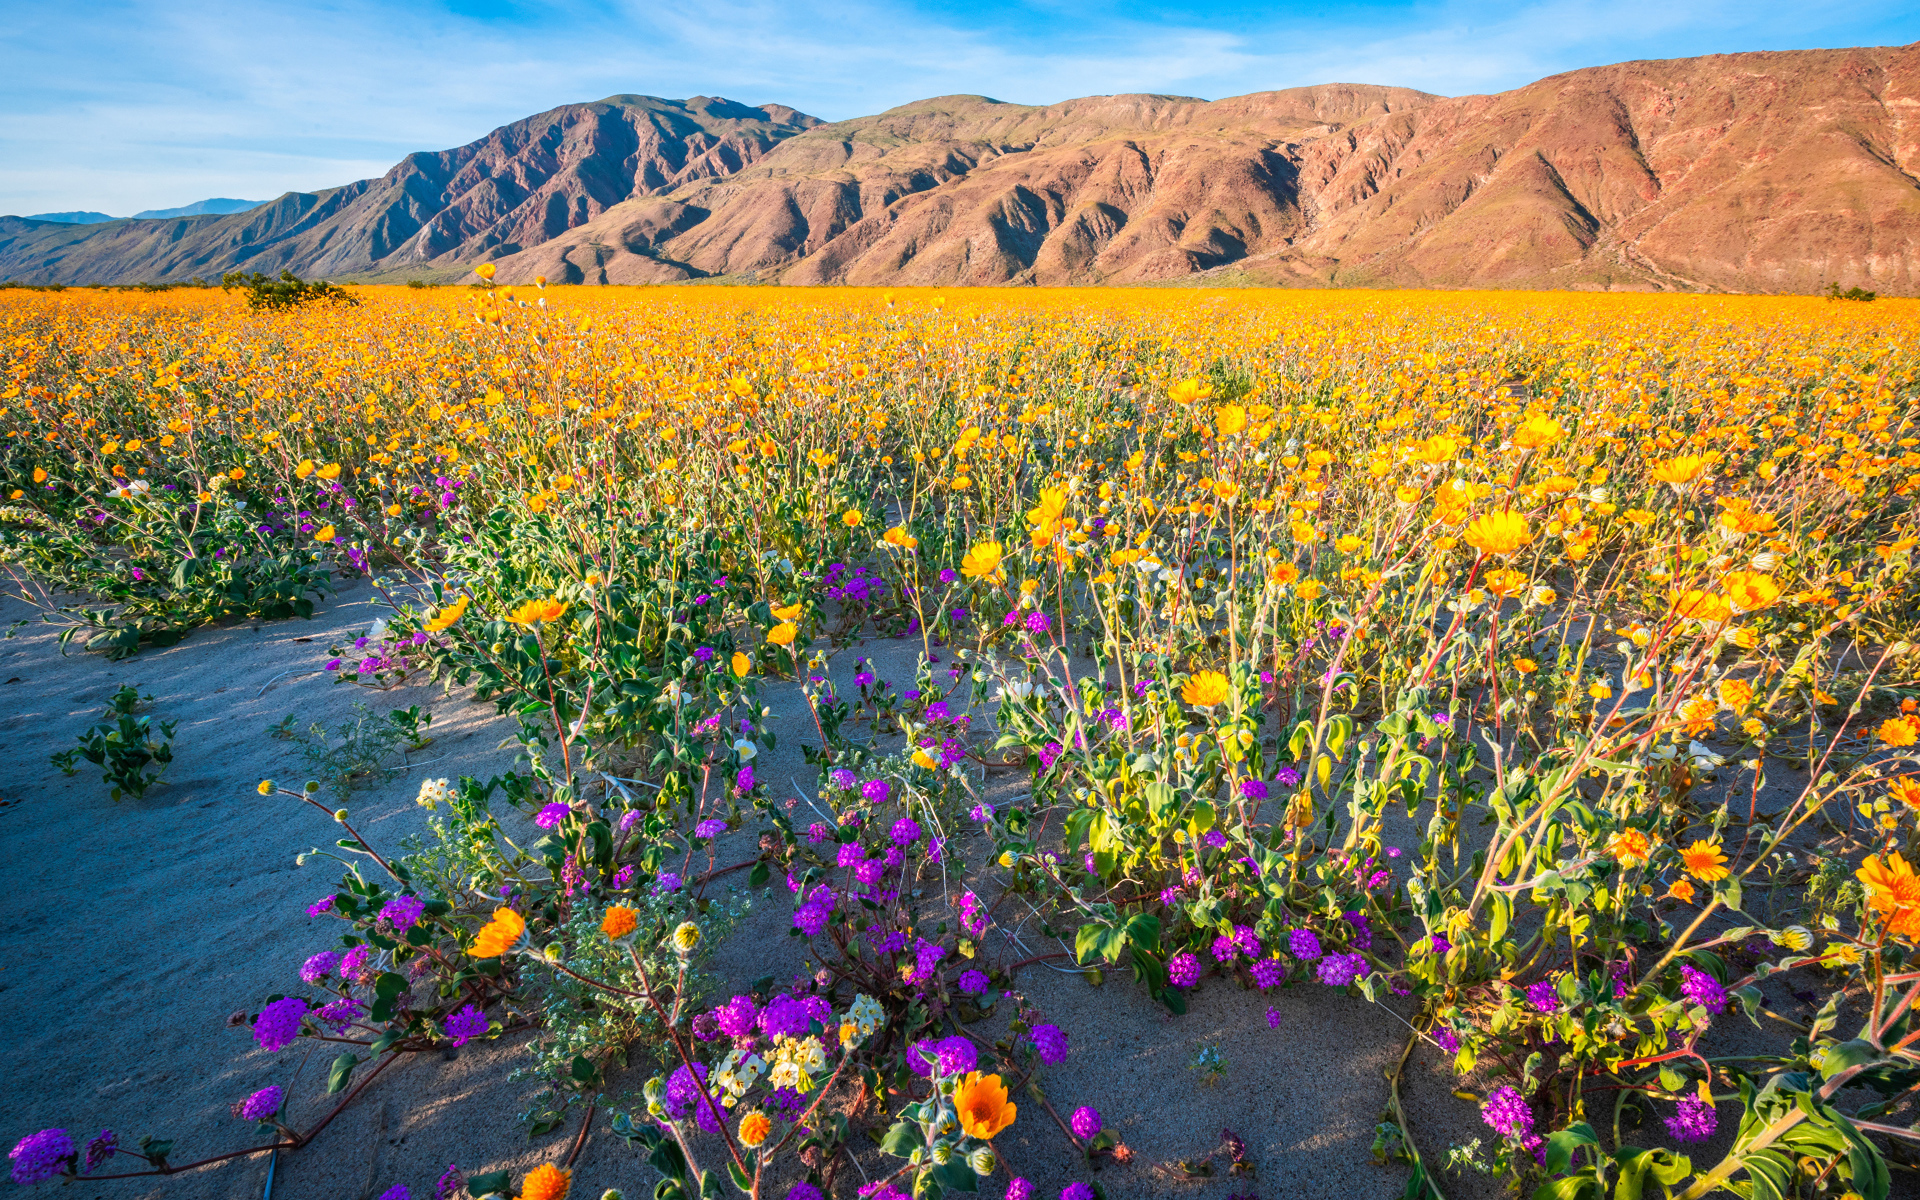 Пустыня на фоне гор покрылась цветами